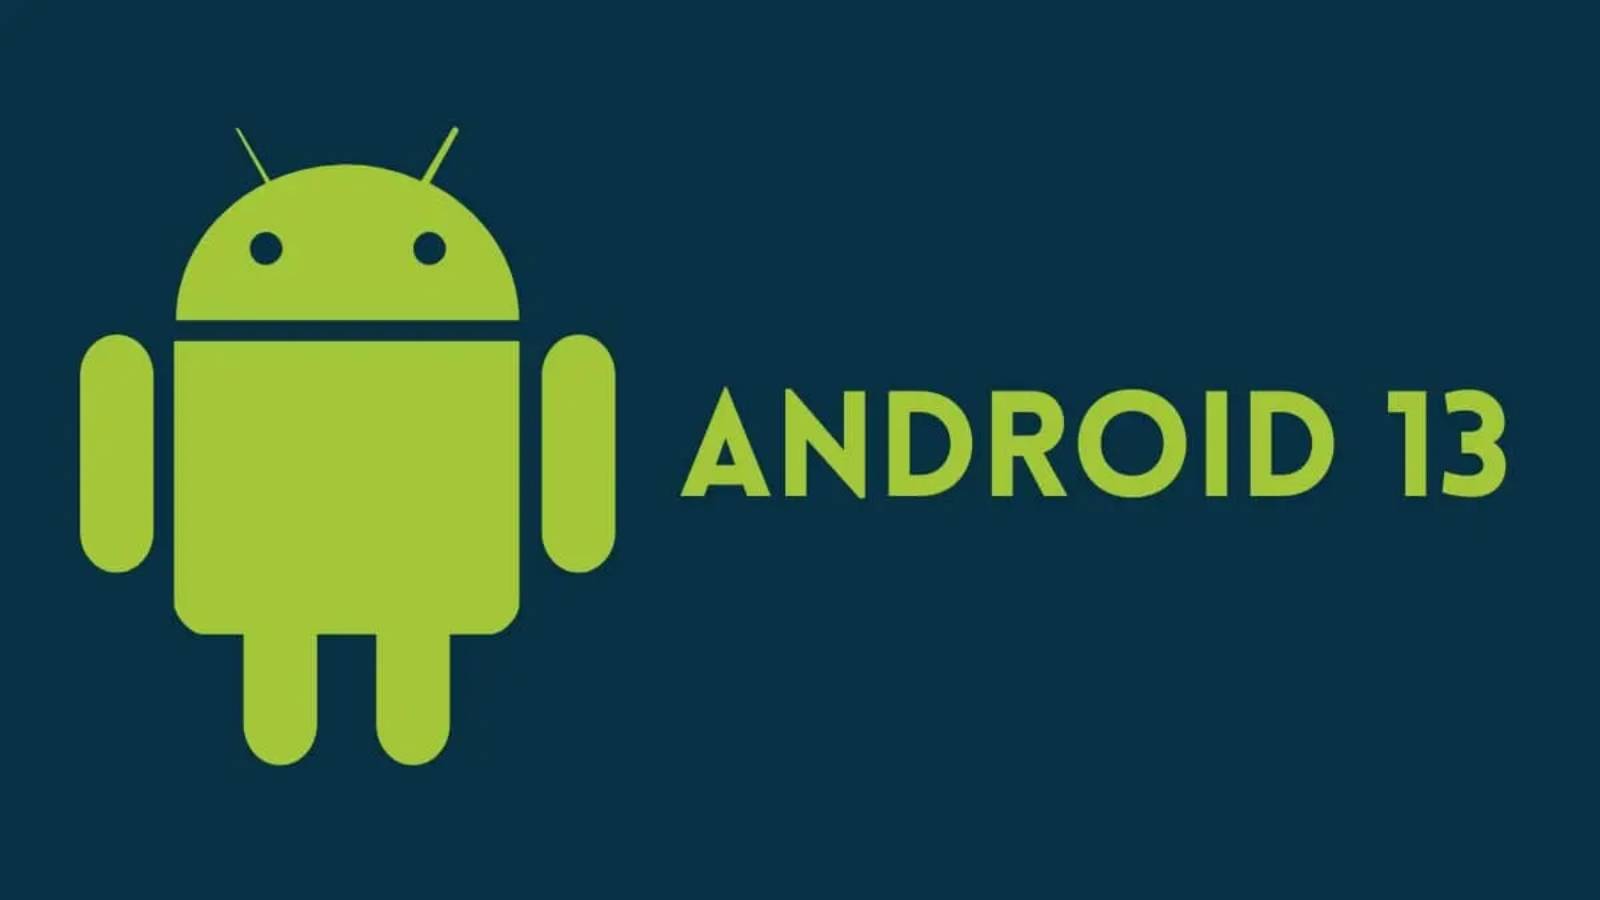 Android 13 Google nimmt eine RADIKALE Änderung vor Wir erwarten Barrierefreiheitsdienste